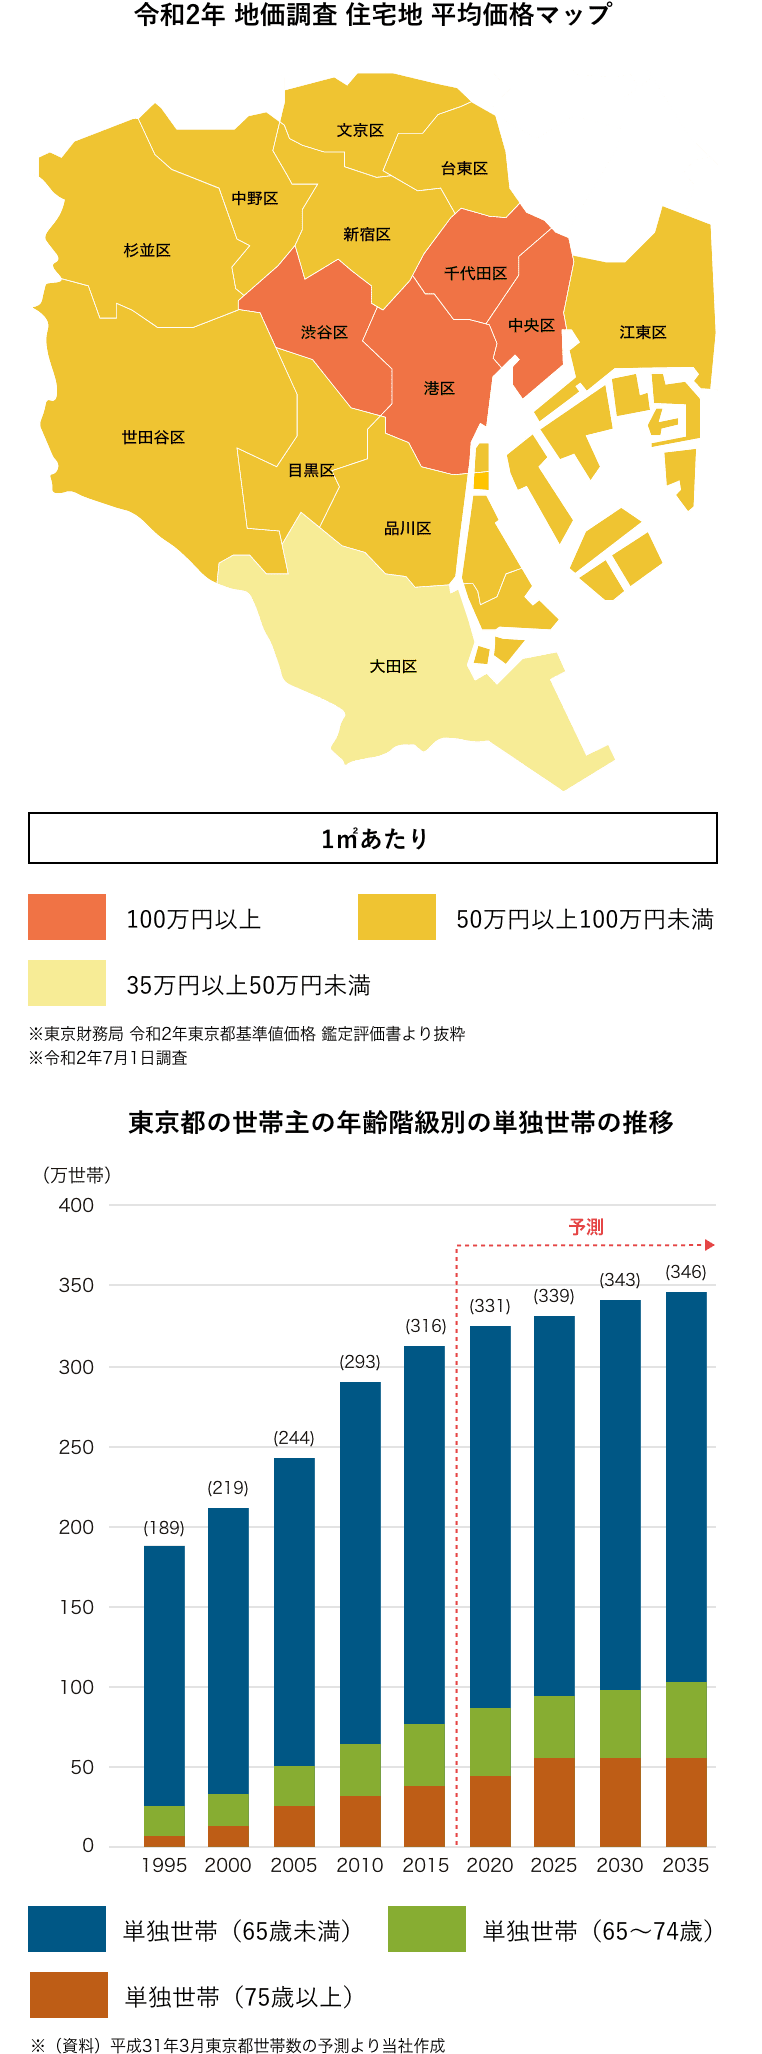 令和2年 地価調査 住宅地 平均価格マップ|東京都の世帯主の年齢階級別の単独世帯の推移